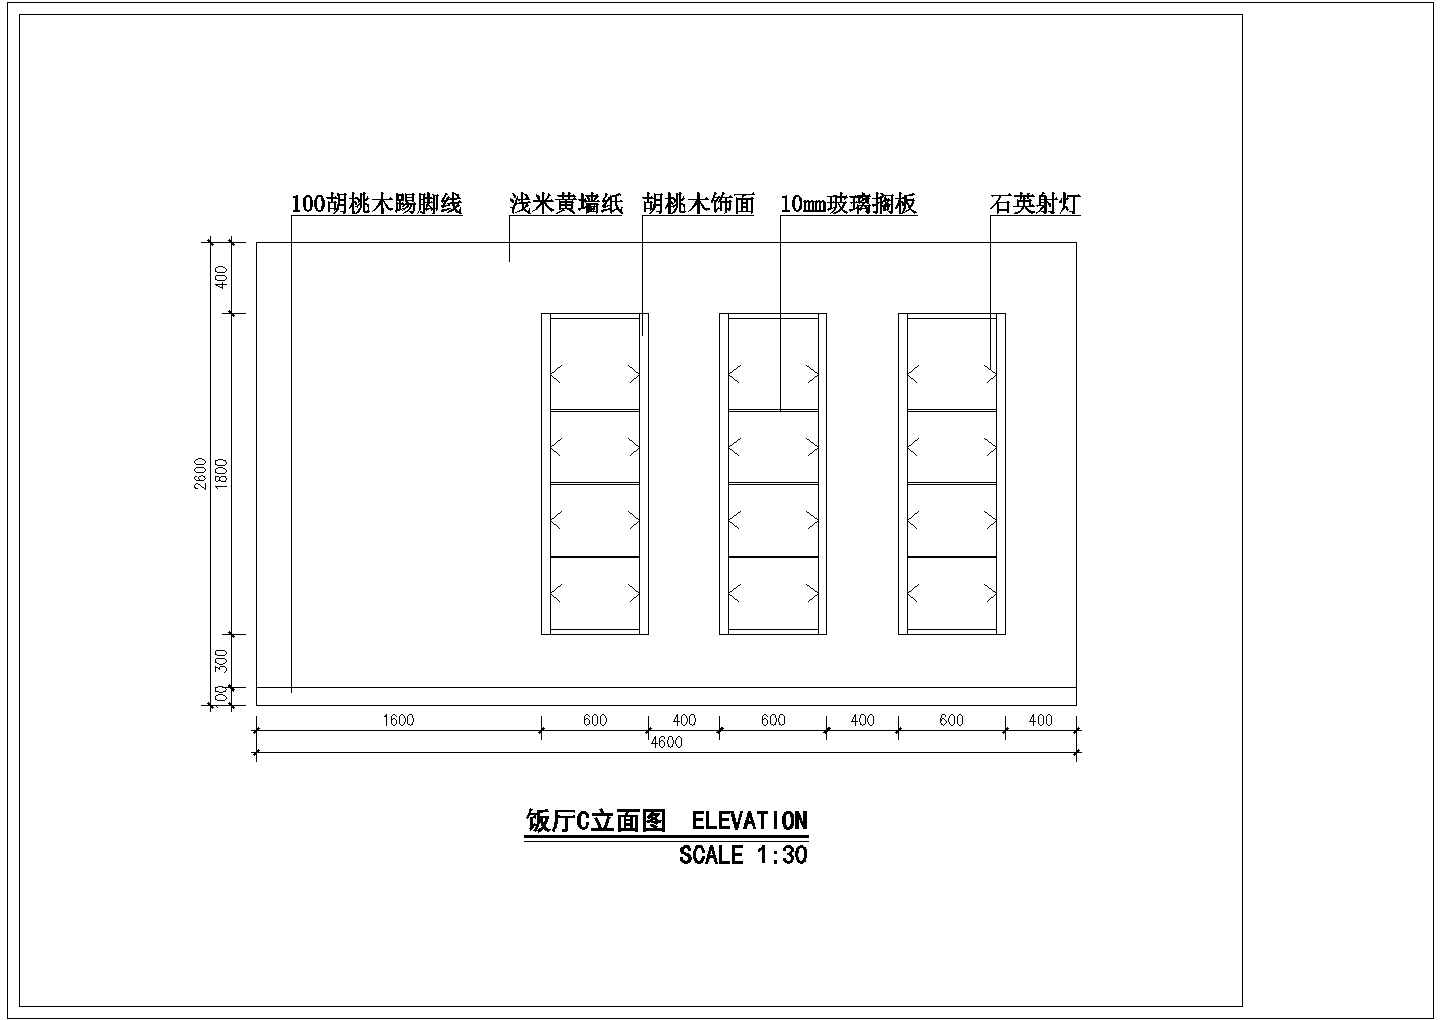 山东威海市某新开盘样板房详细室内装修设计cad图天棚布置图